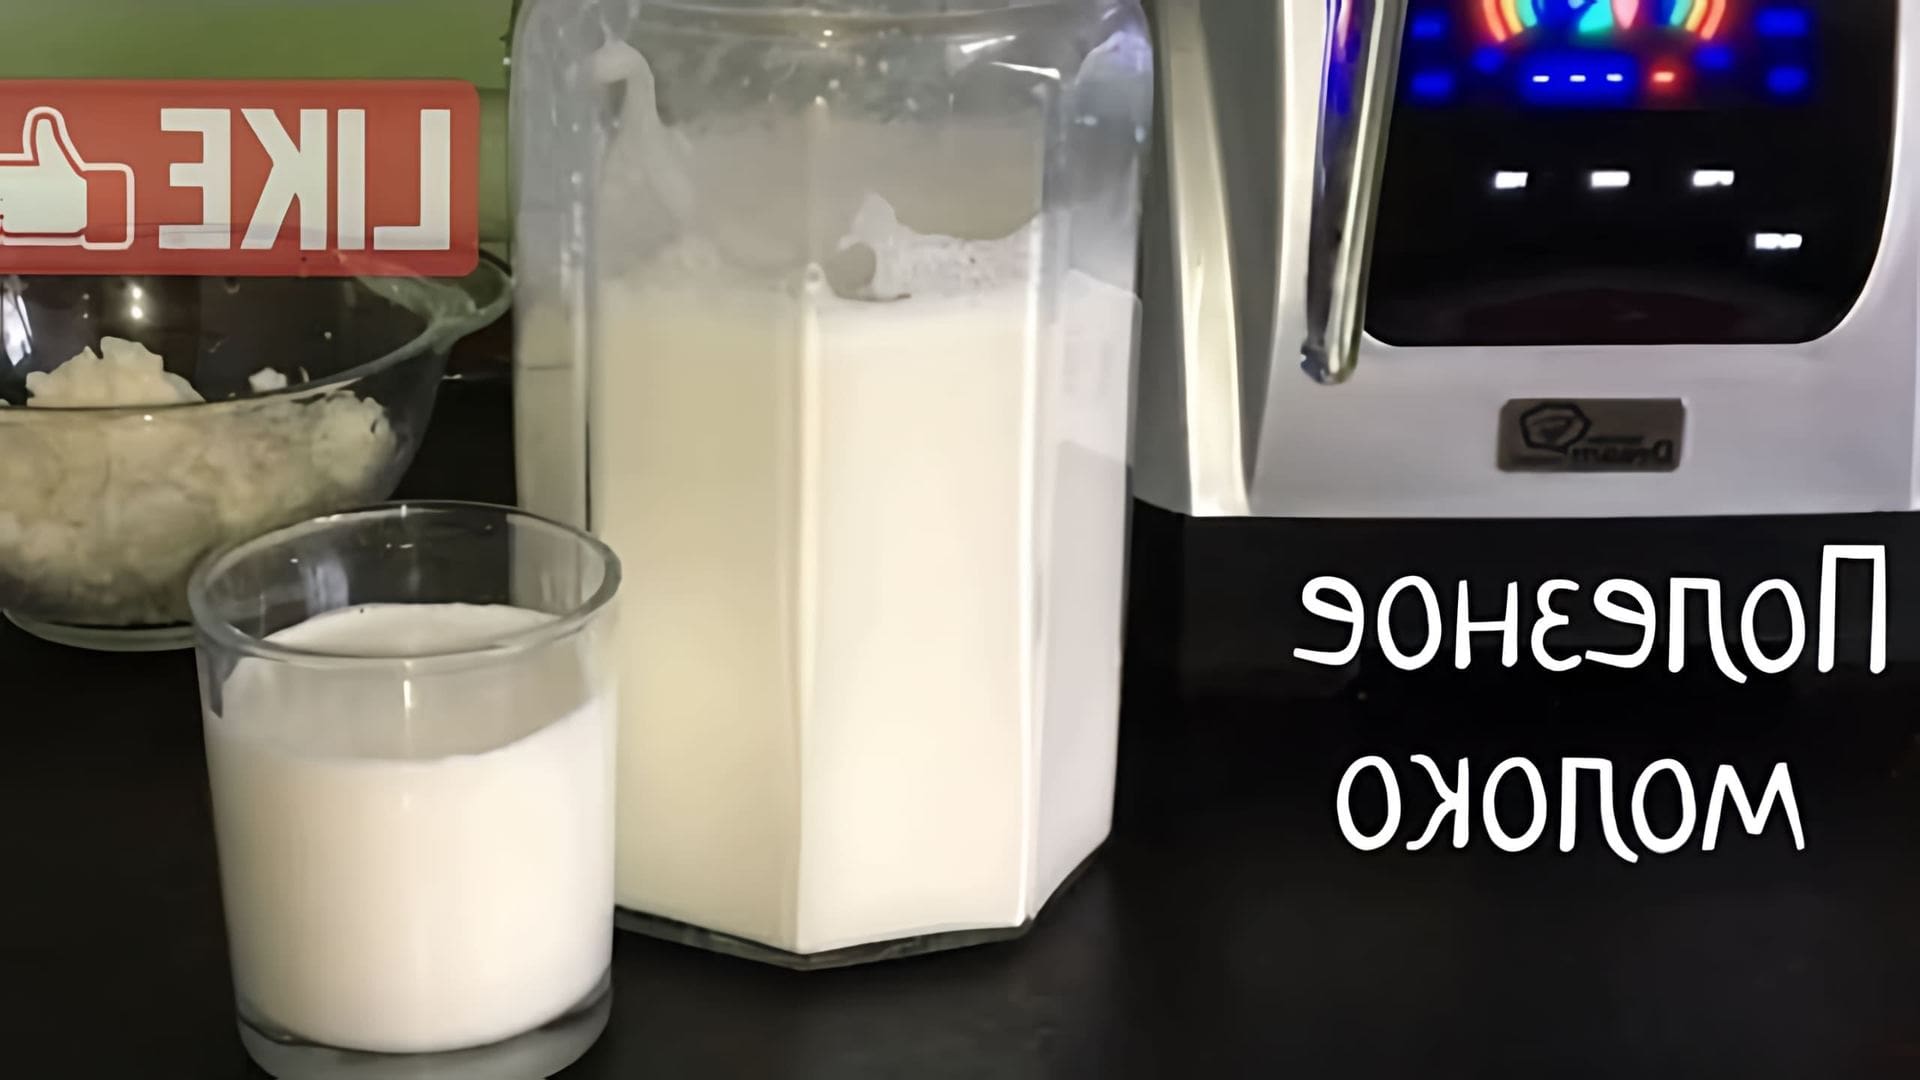 В этом видео демонстрируется, как приготовить миндальное молоко в домашних условиях